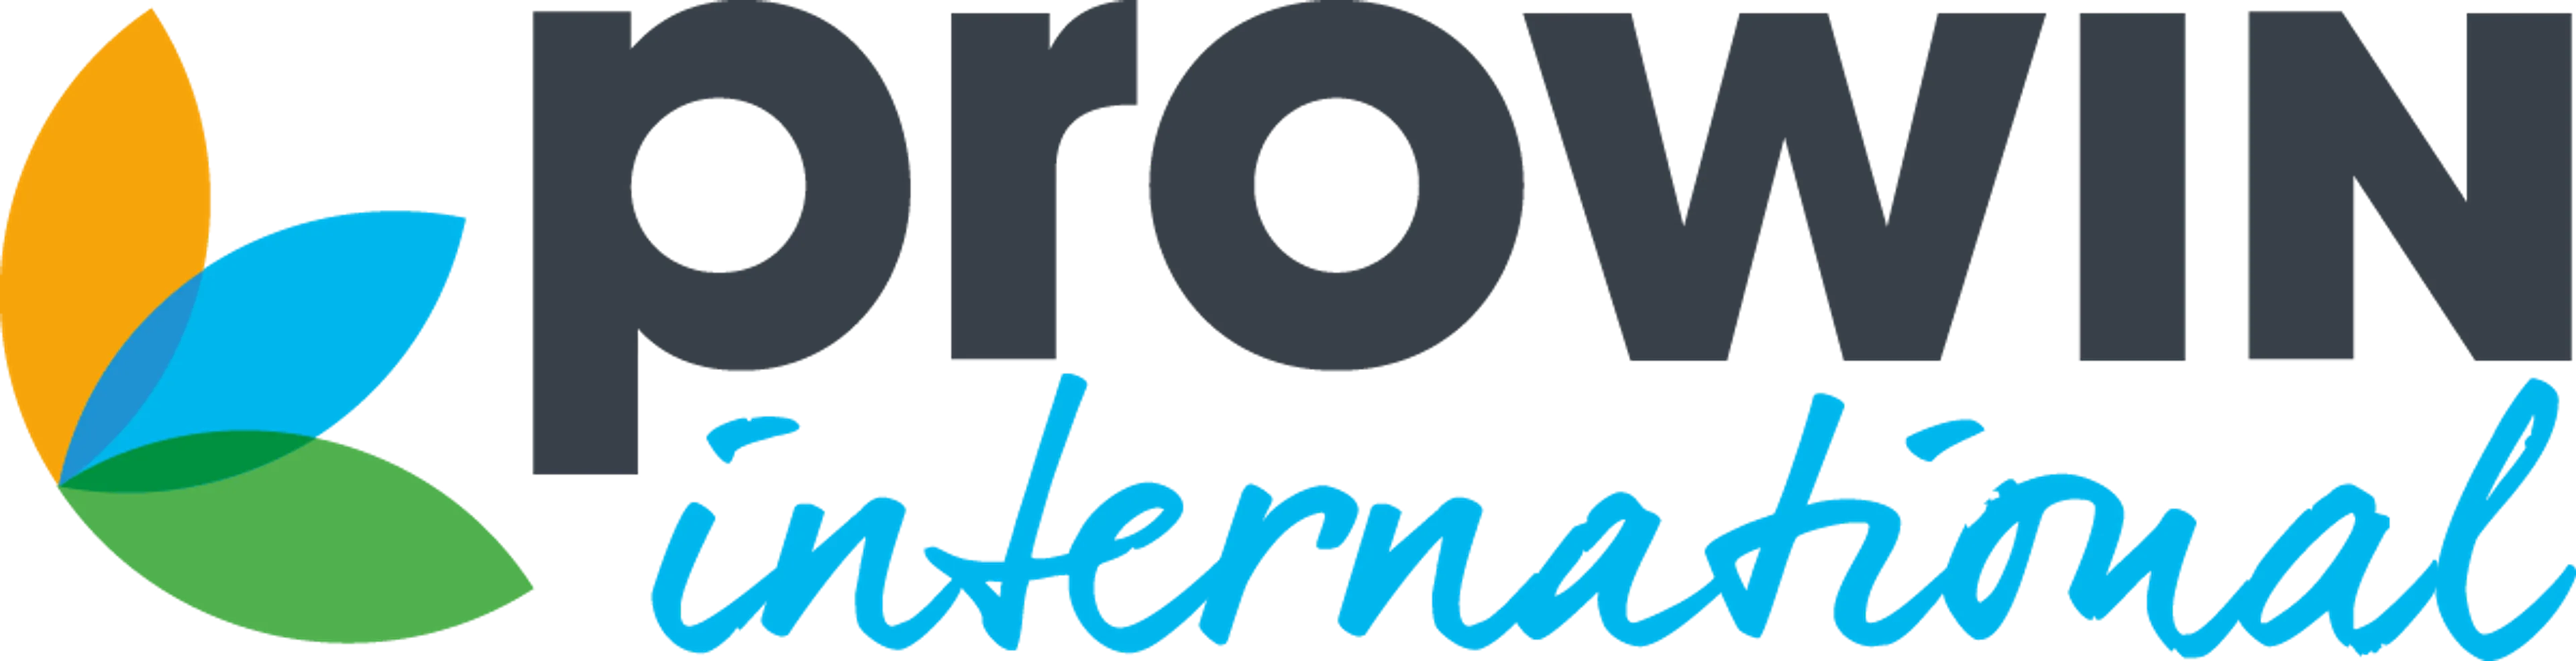 PROWIN logo